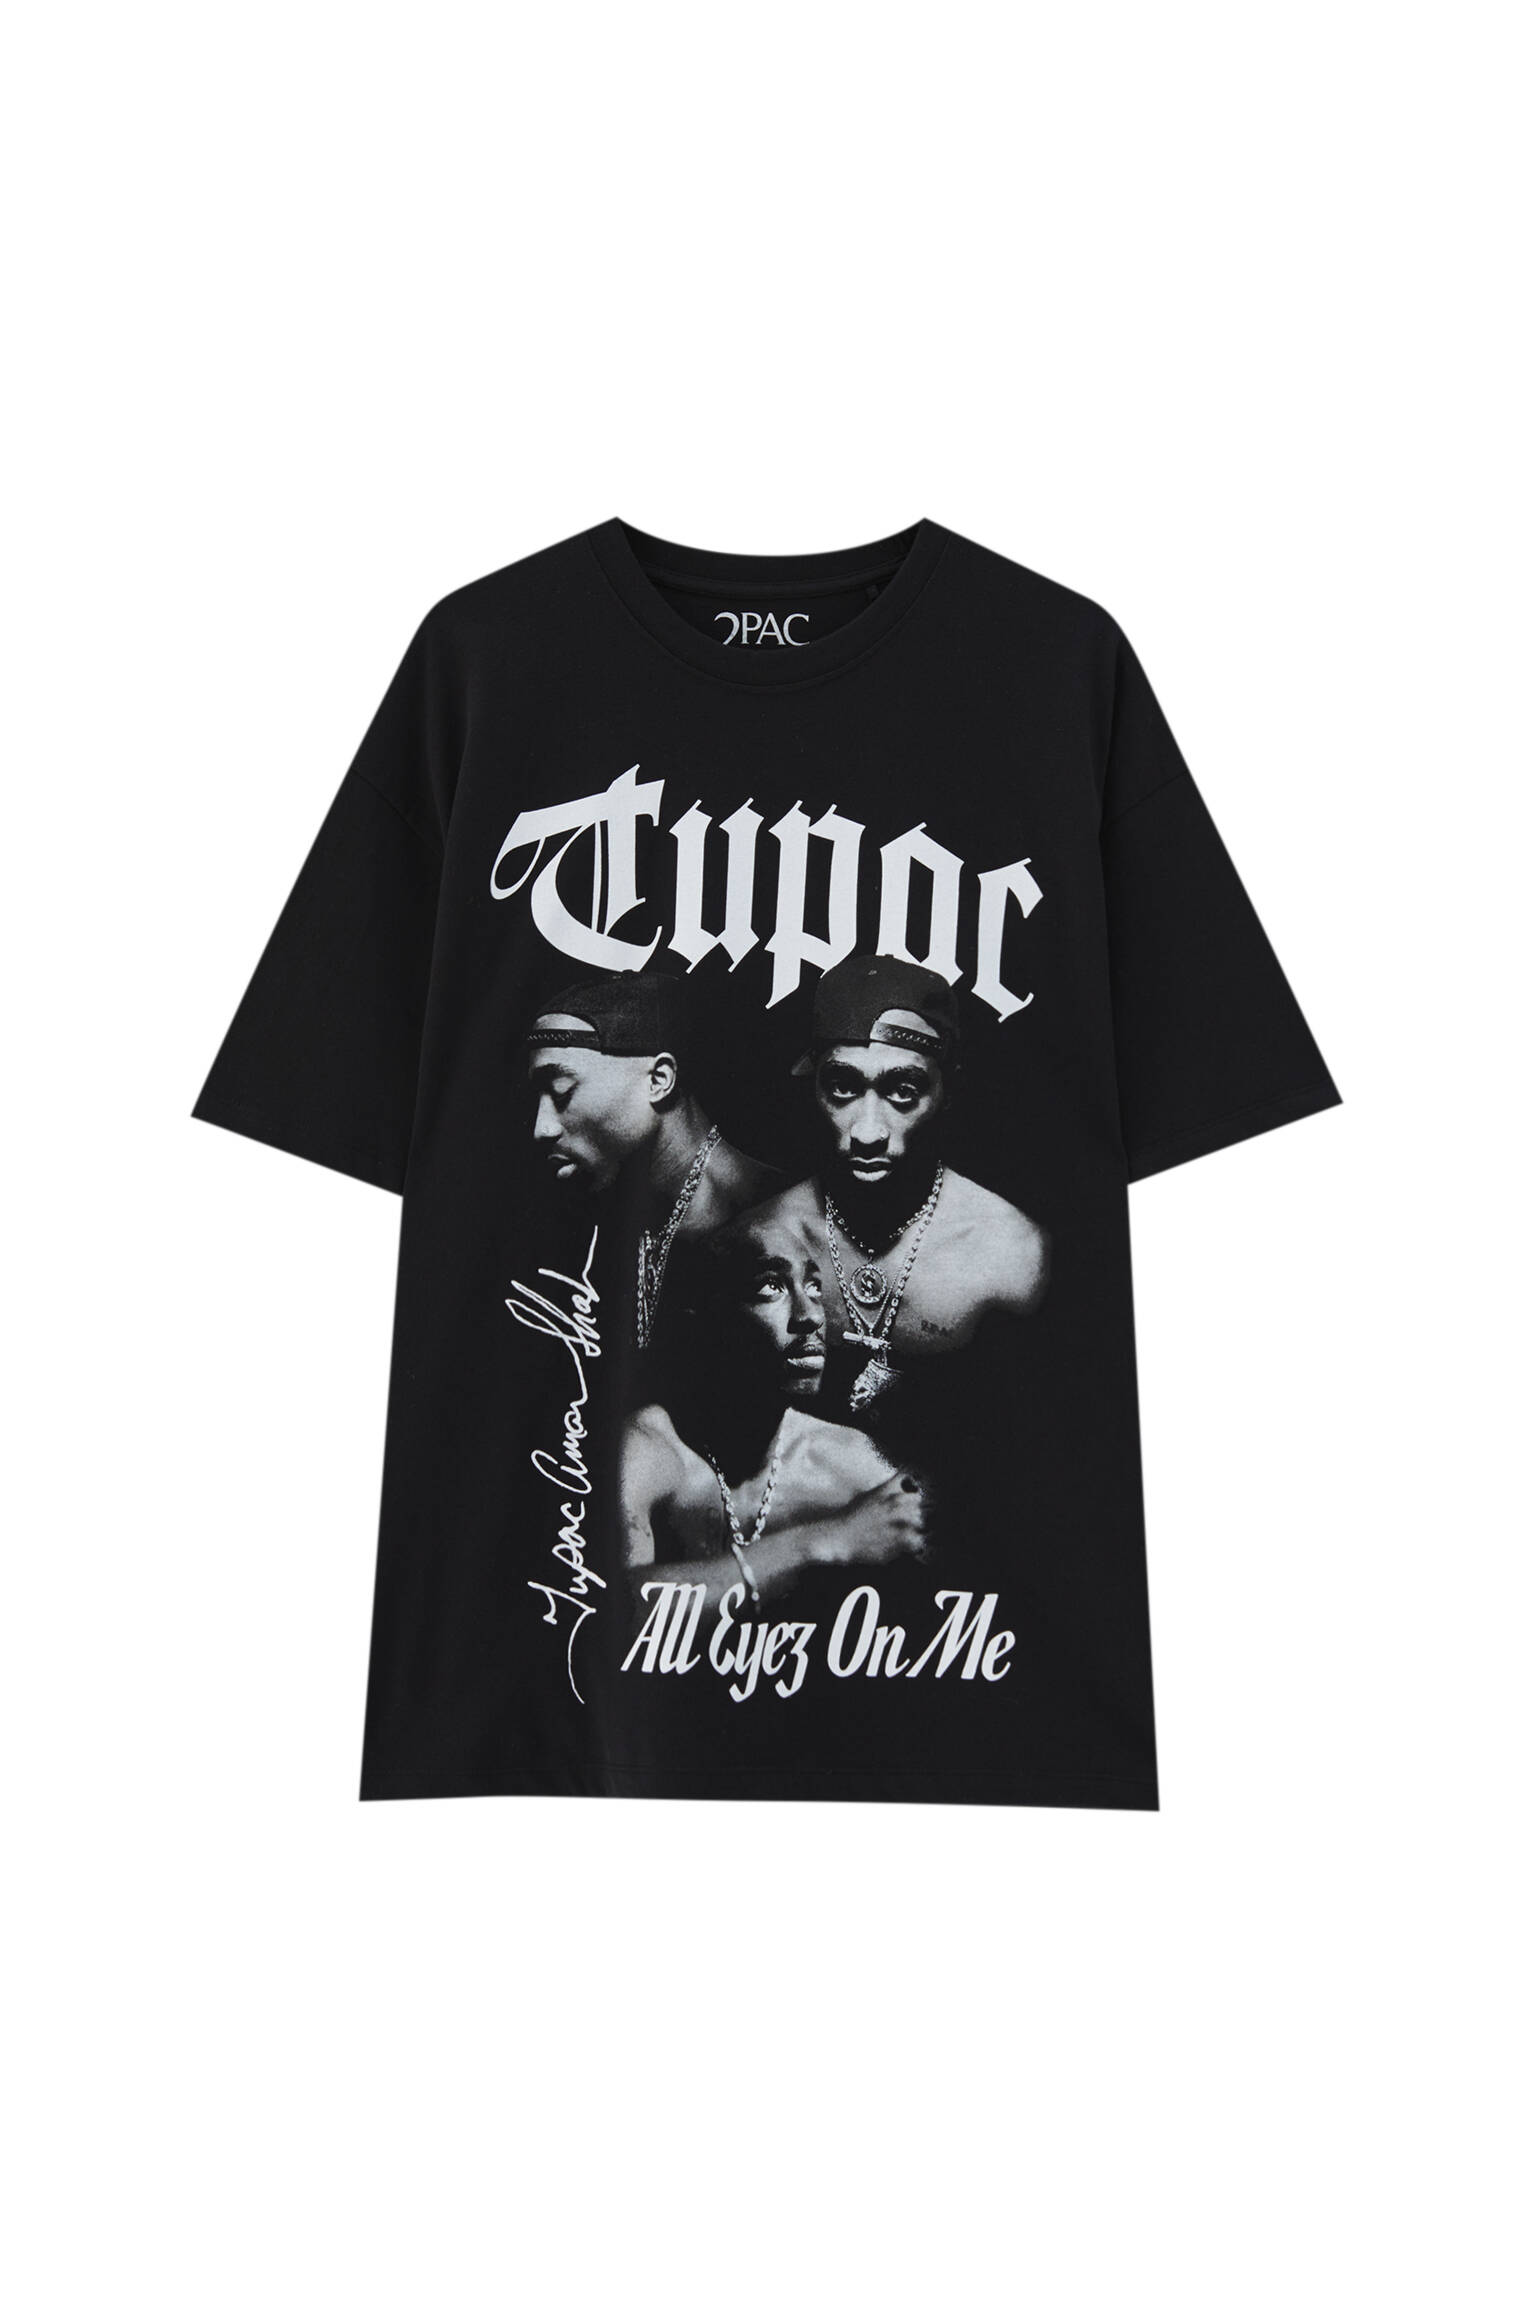 Pull&bear Homme T-shirt Noir En Coton à Manches Courtes Et Col Rond, Avec Photographie De Contrastante De Tupac. Noir Xl